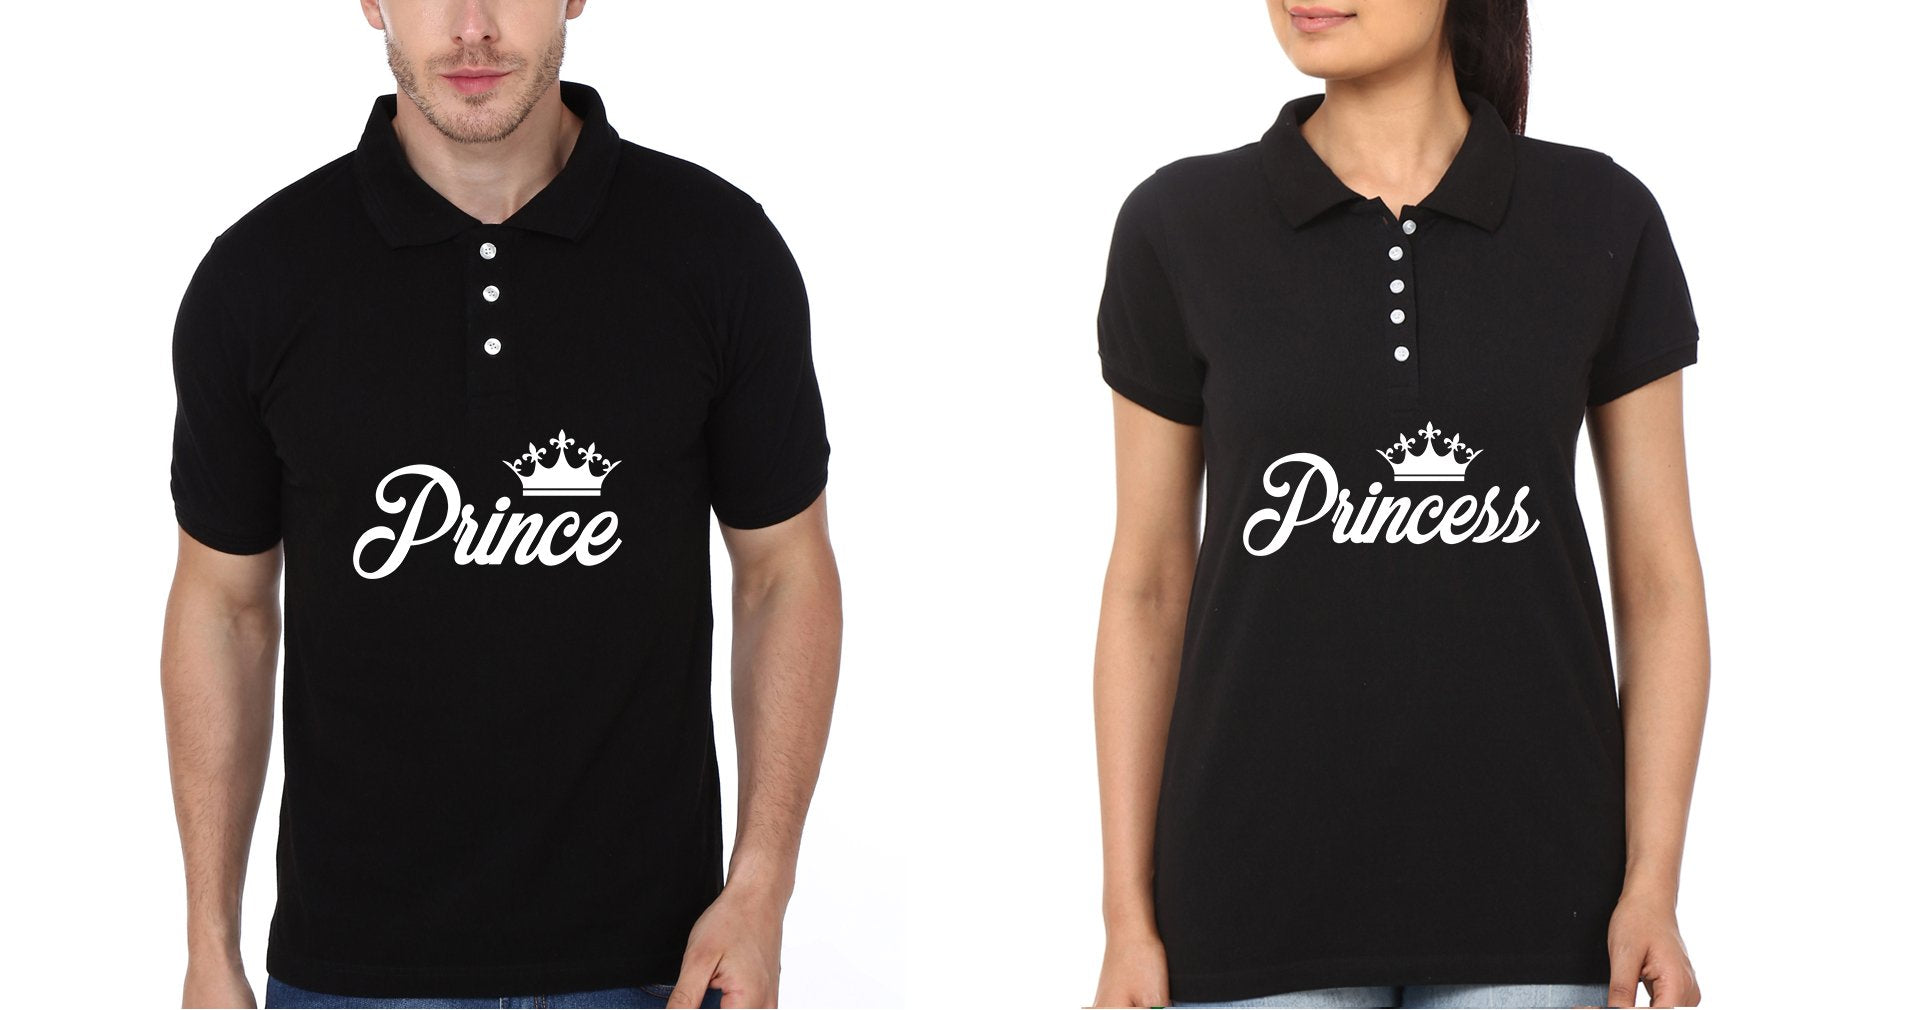 Prince Princess Couple Polo Half Sleeves T-Shirts -FunkyTradition